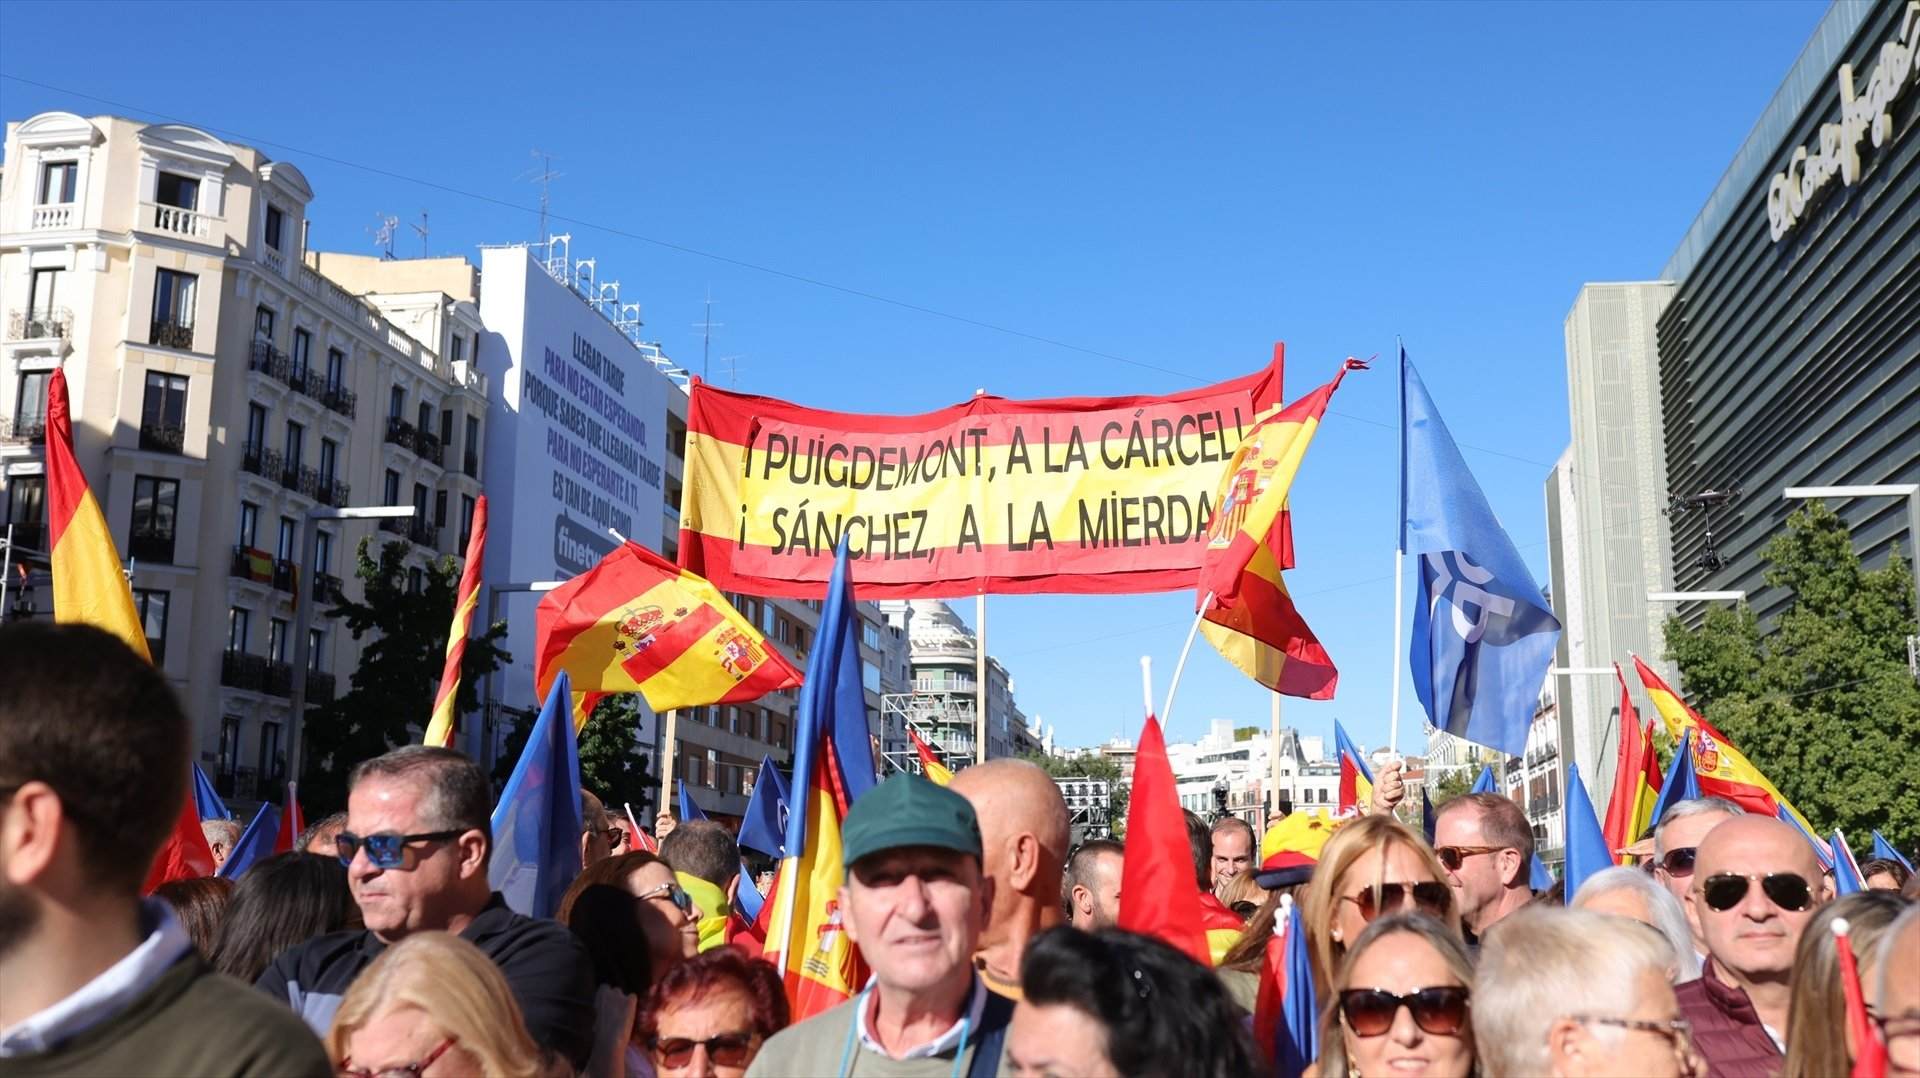 La prensa española conservadora estalla de euforia por el acto del PP contra la amnistía